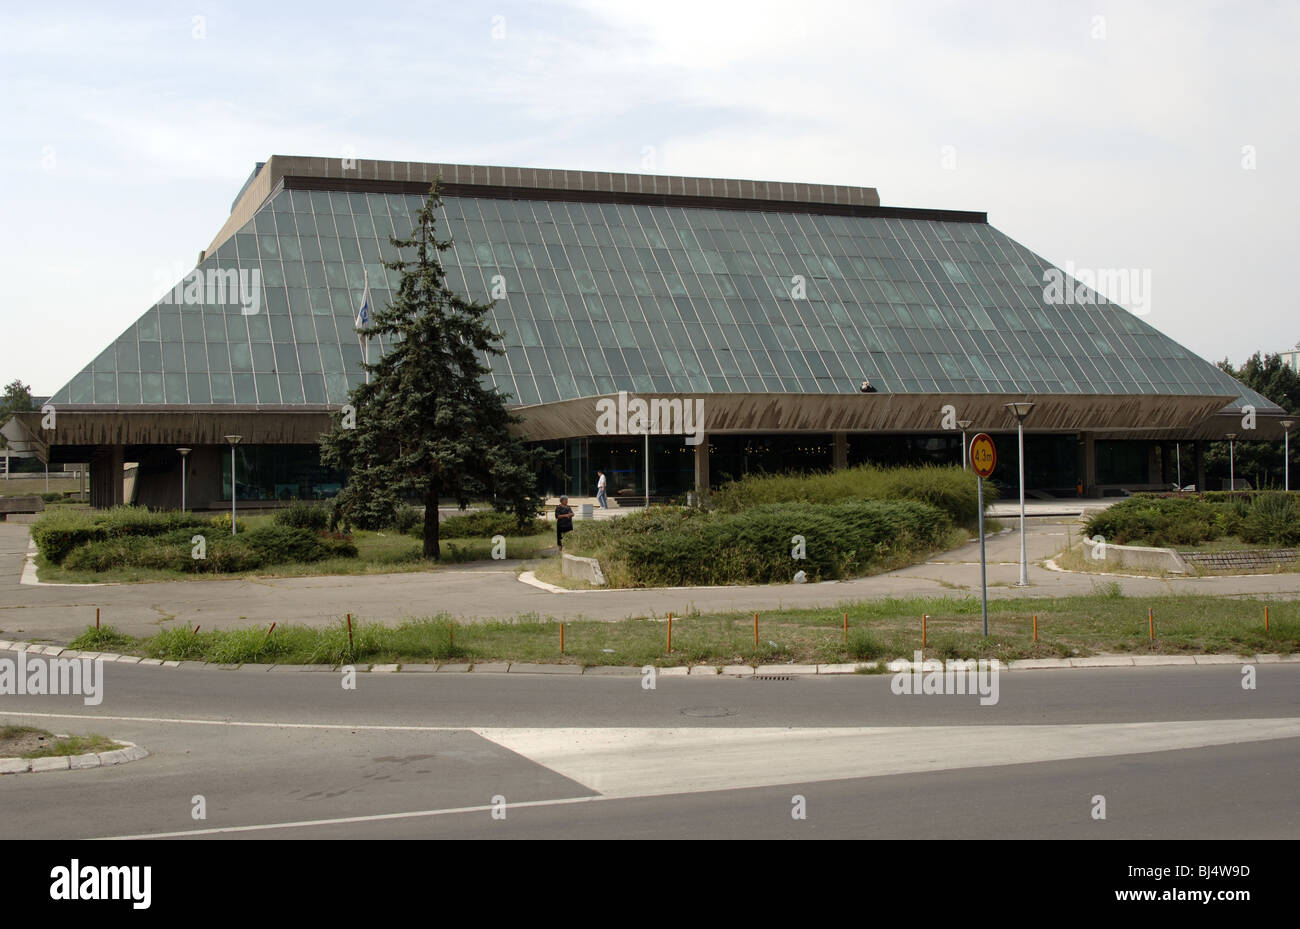 Aufbau von Sava Centar, International Congress Center und kulturelle Aktivitäten. Belgrad. Republik Serbien. Stockfoto